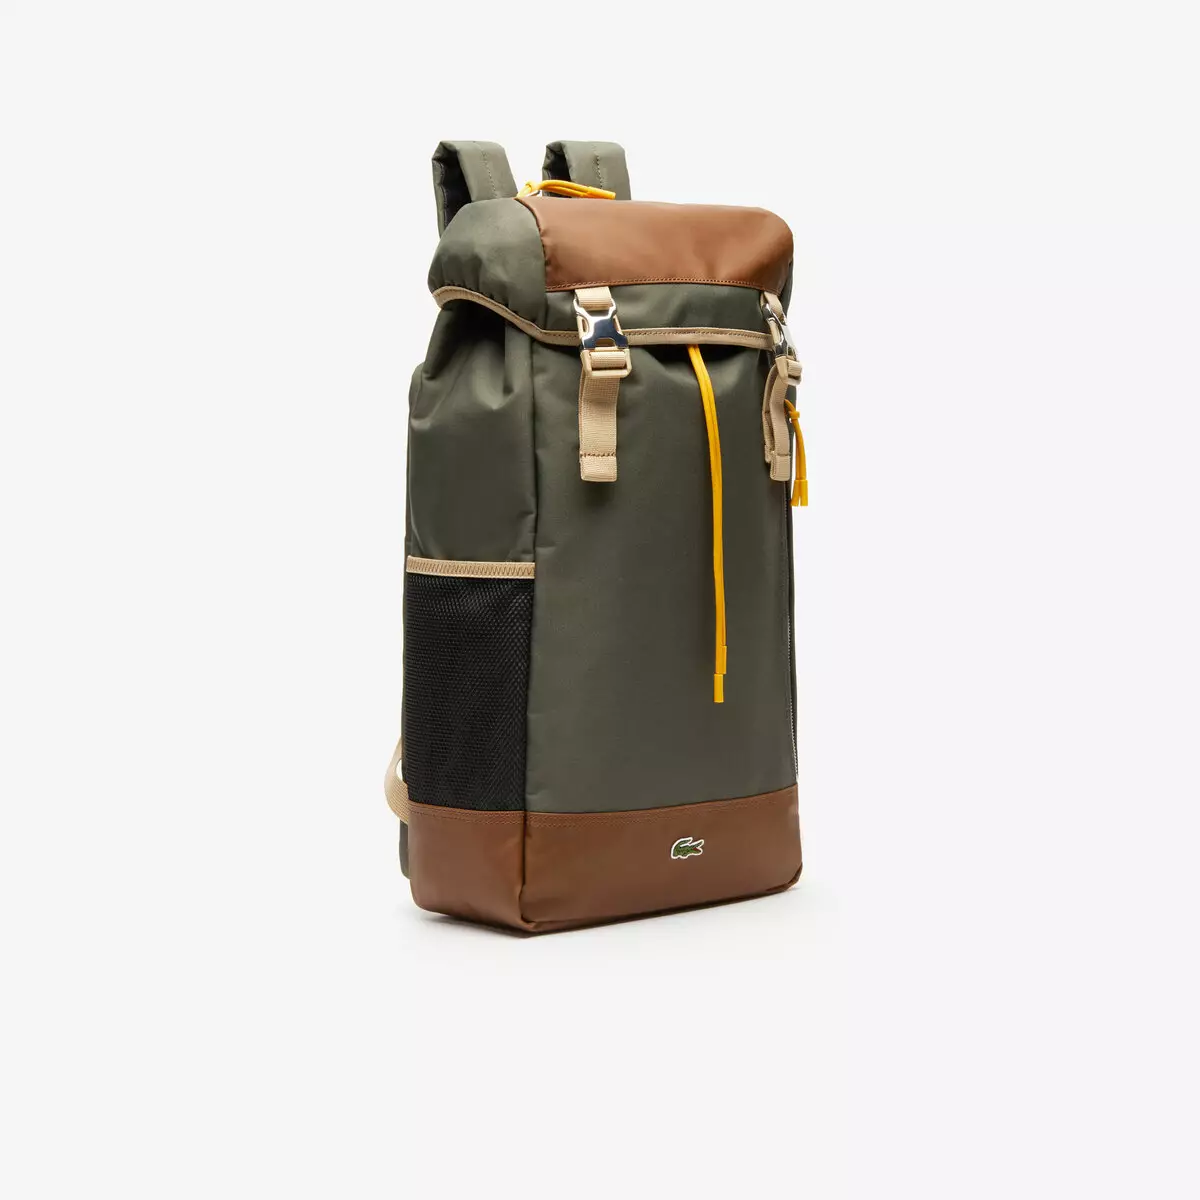 Lacoste plecaki: damskie i męskie, czarne i niebiesko-zielone, skórzane plecaki torby, inne 15408_38